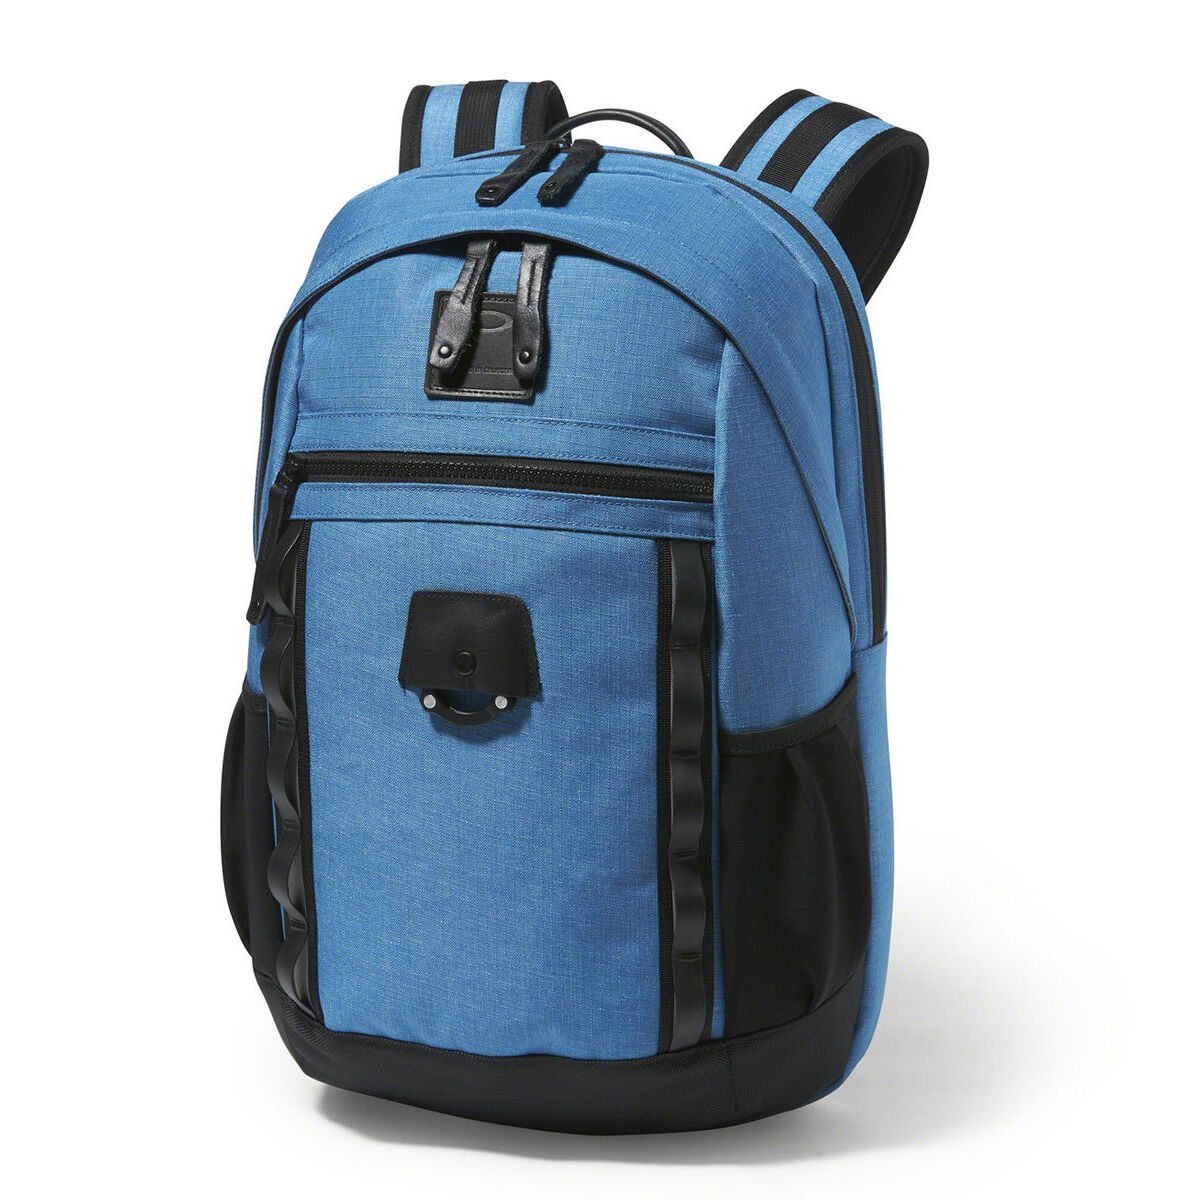 oakley voyage backpack